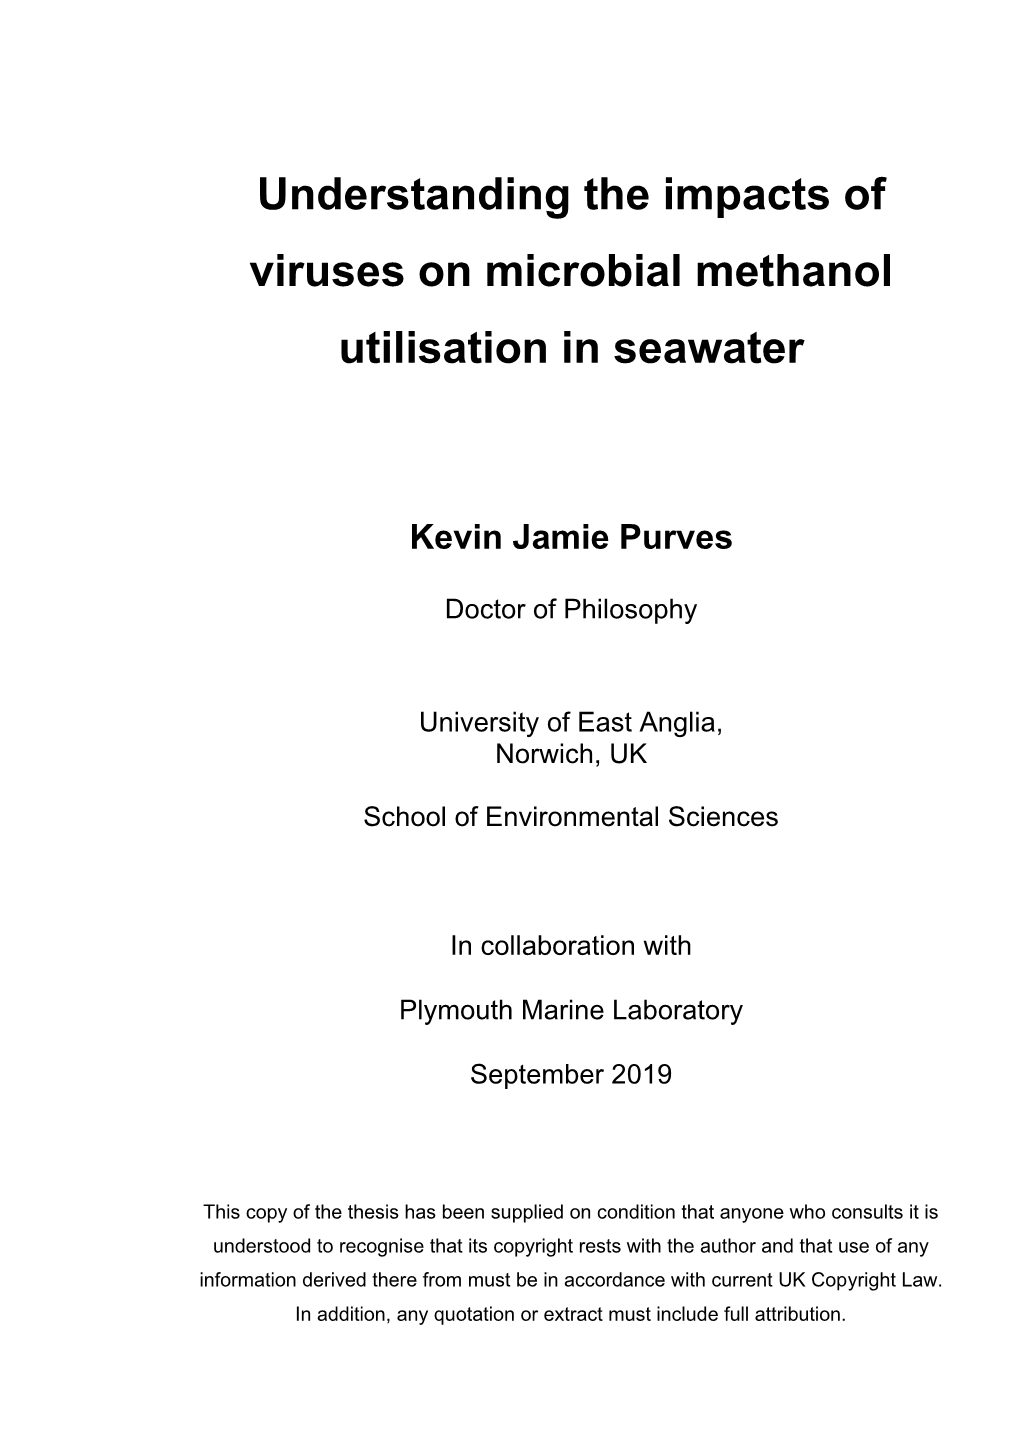 Understanding the Impacts of Viruses on Microbial Methanol Utilisation in Seawater